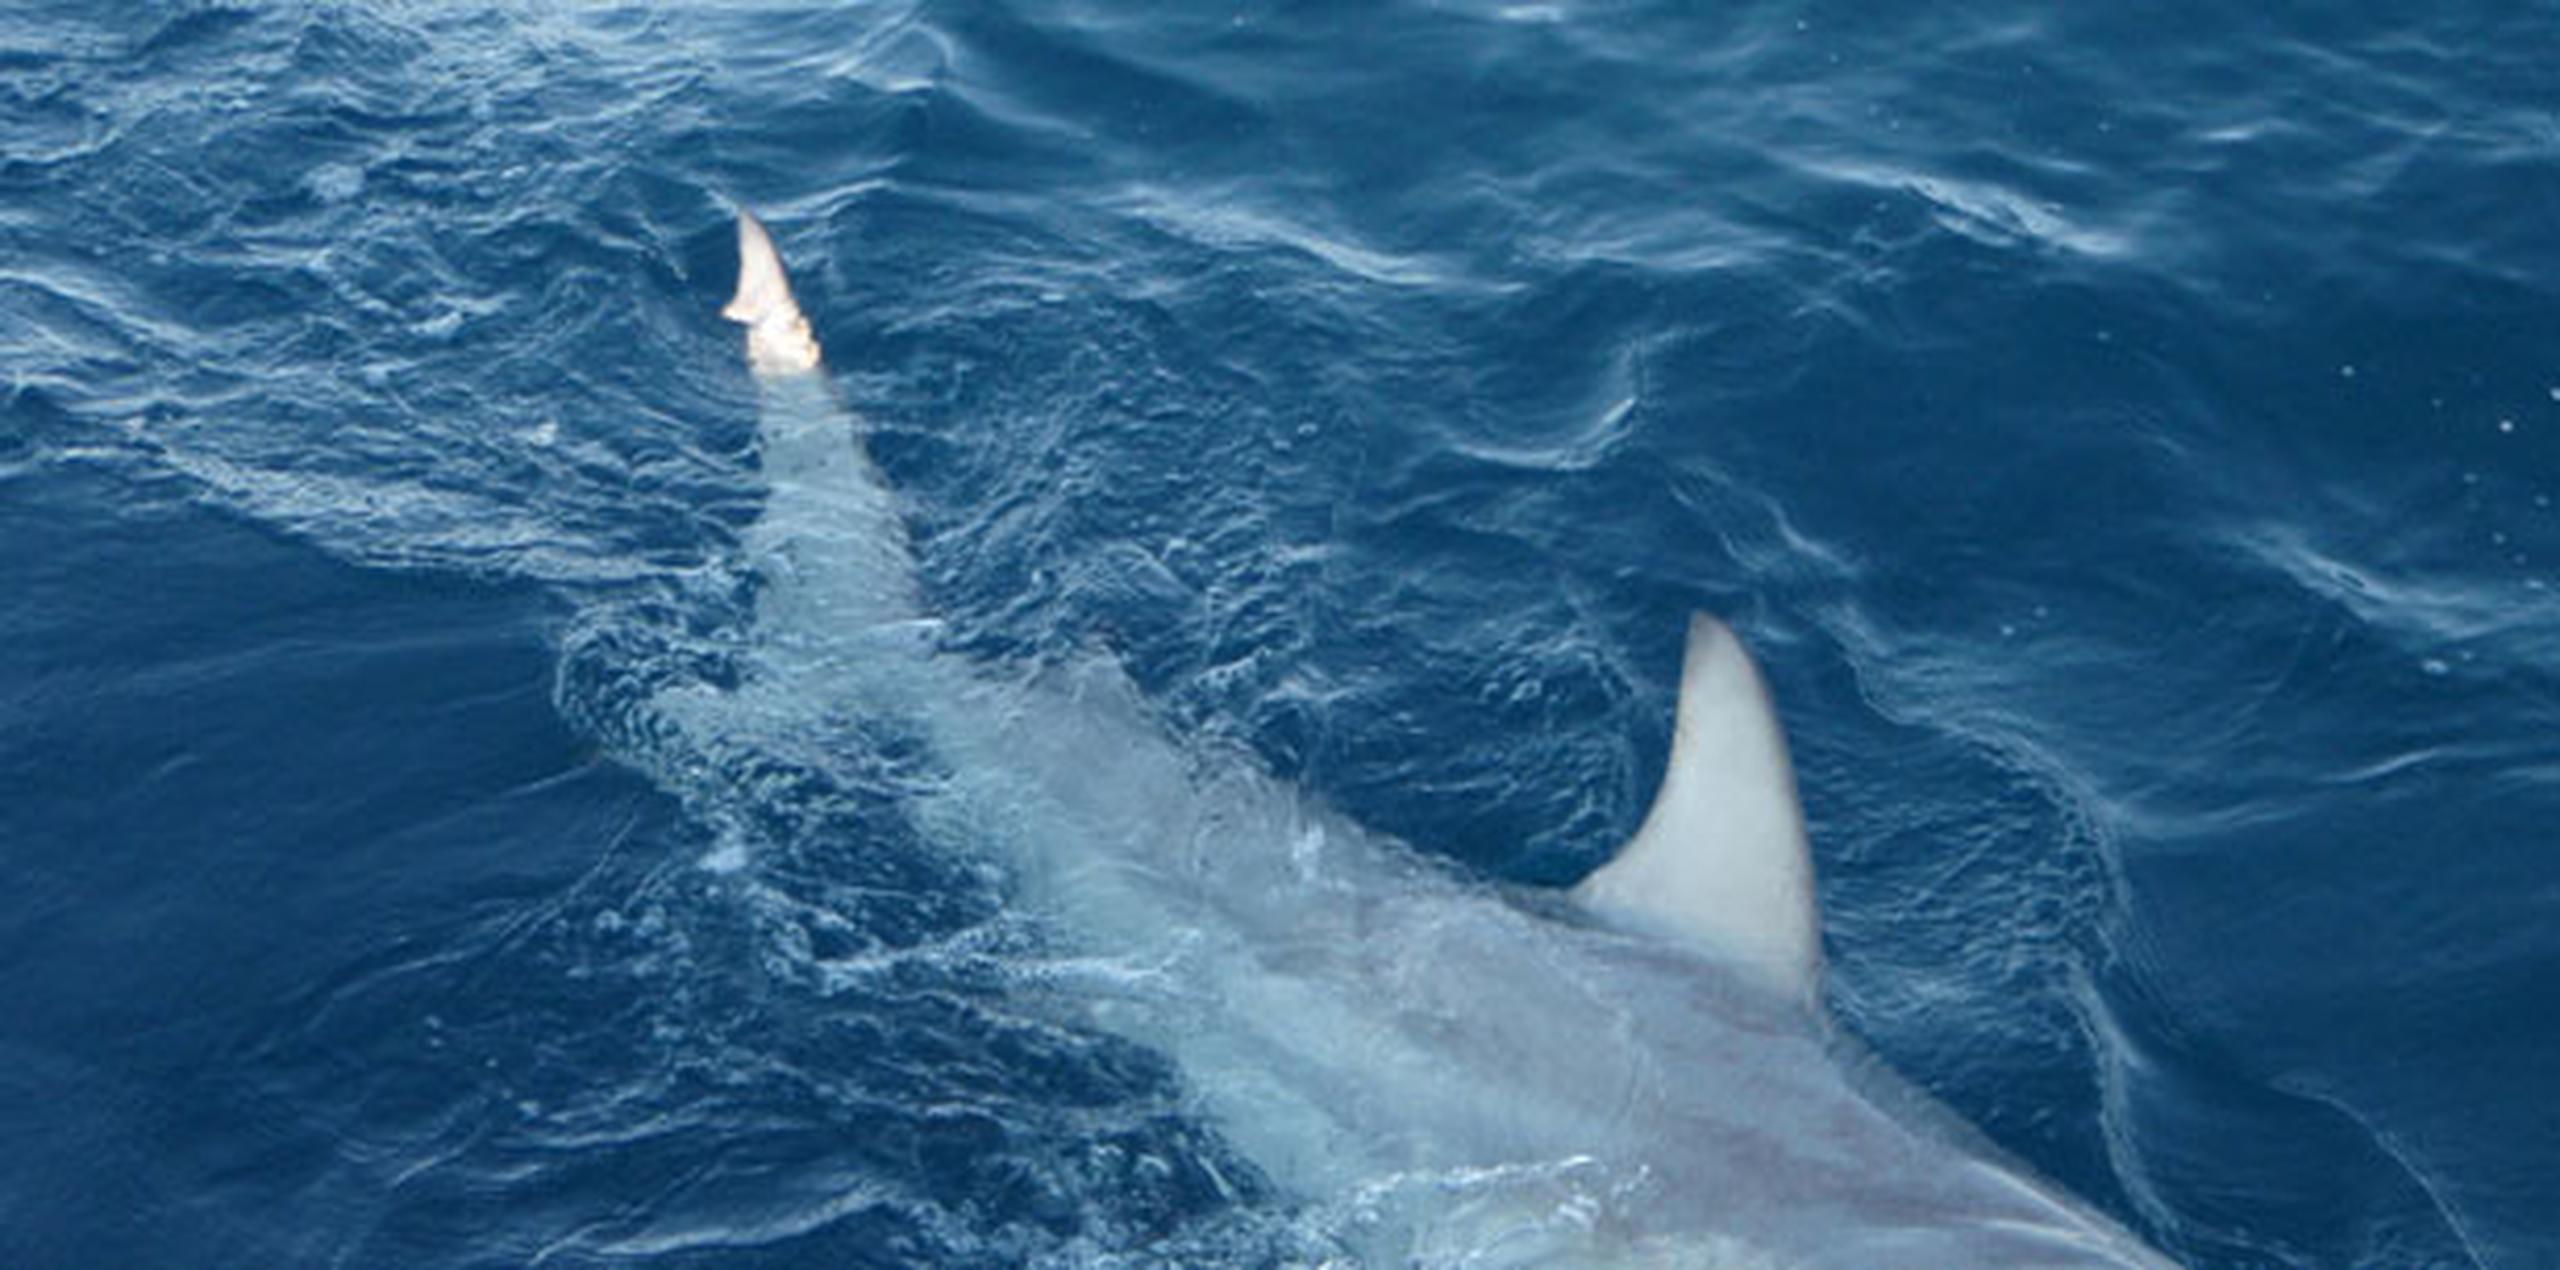 Los ataques de tiburones suelen ocurrir en aguas del sur de Florida, a donde llegaron a partir de marzo pasado miles de tiburones de punta negra (Carcharhinus melanopterus). (Archivo)